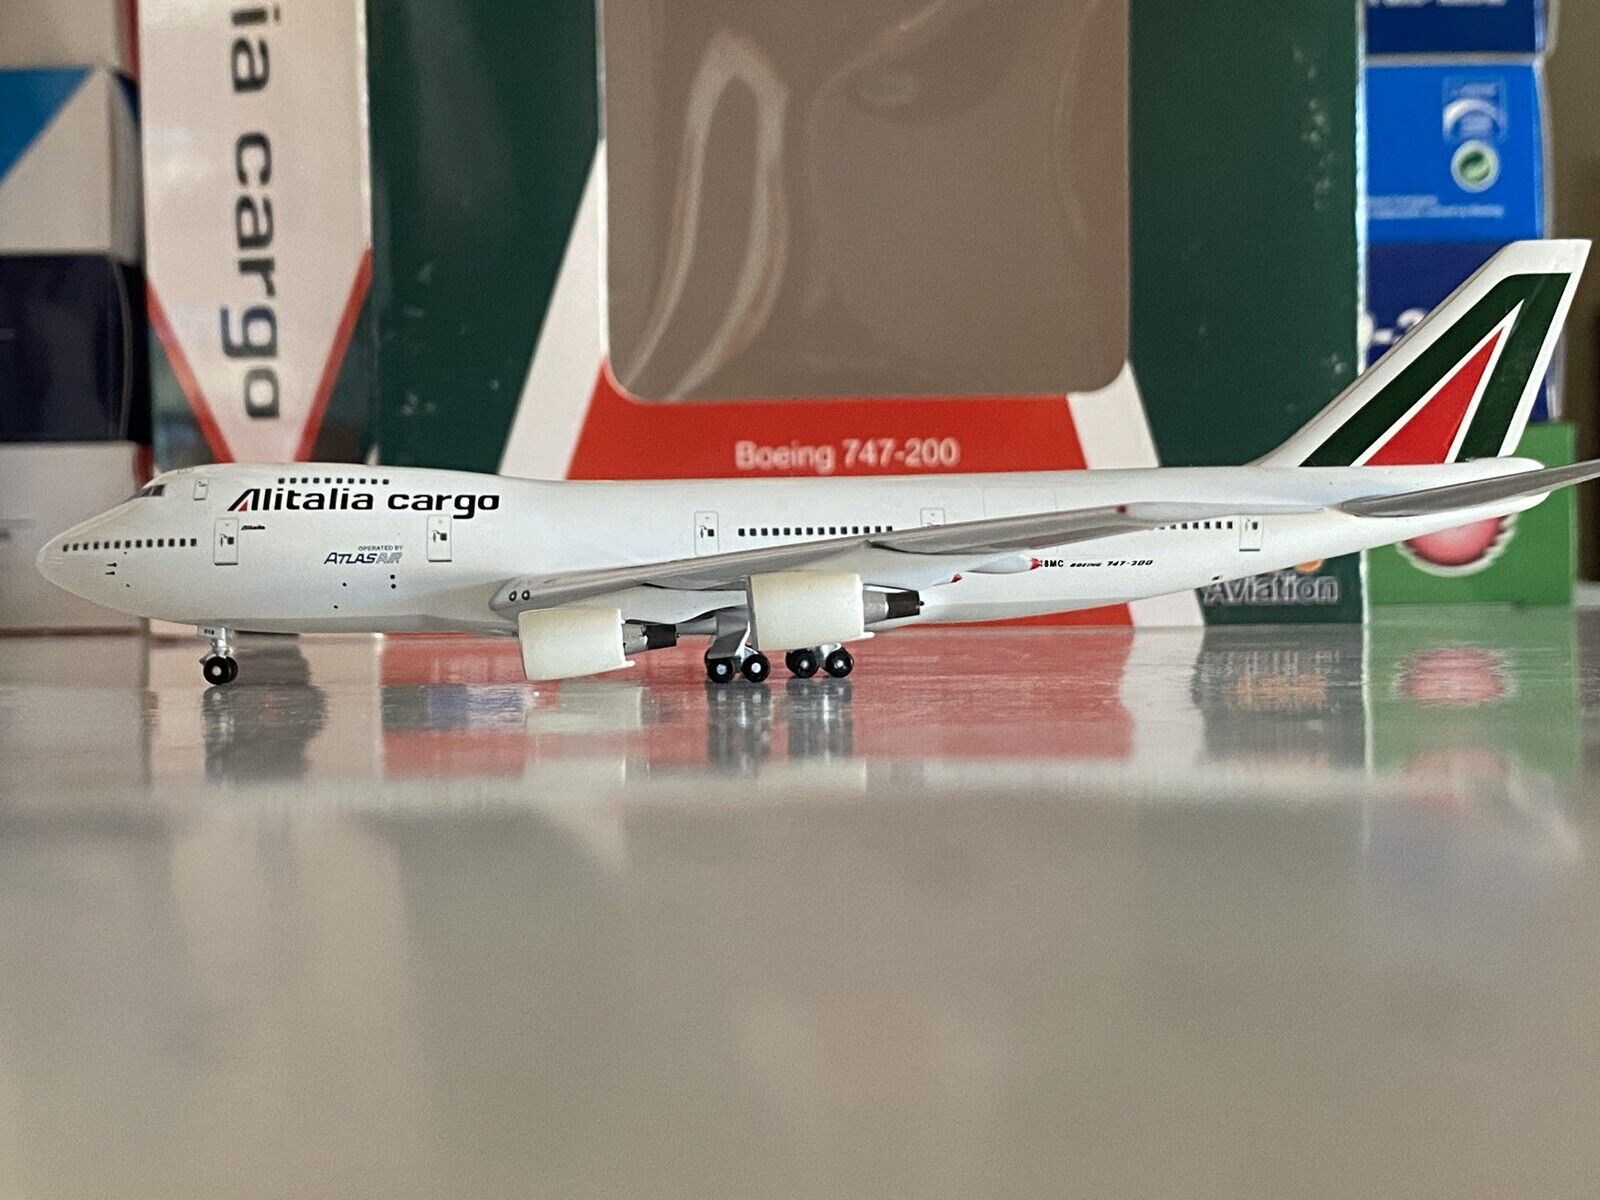 Aviation400 Alitalia Boeing 747-200 1:400 N518MC AV4742025